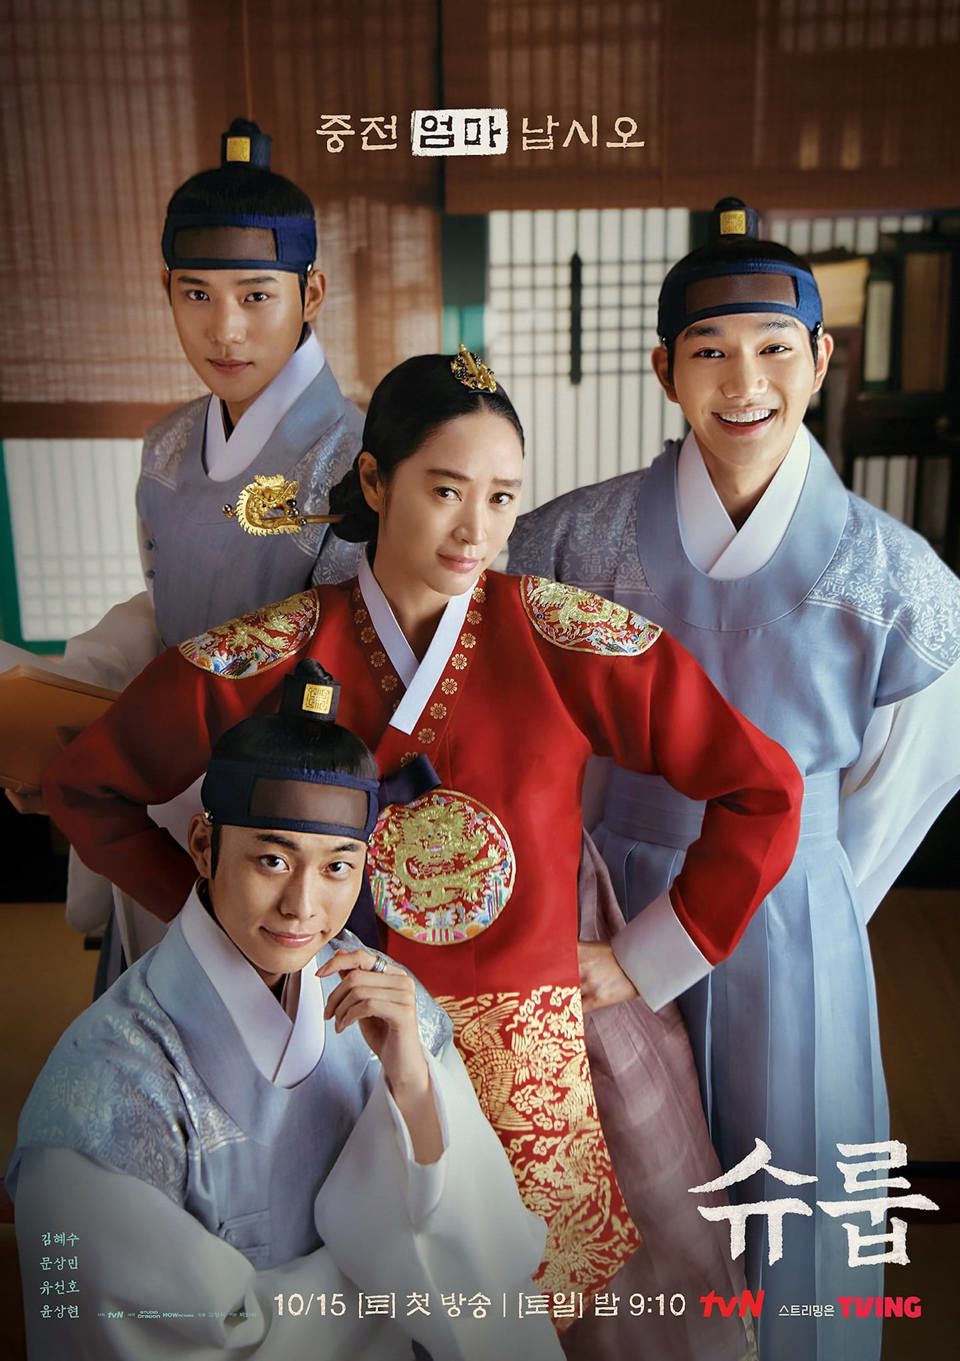 Đảm nhận vai Trung Điện Im Hwa Ryeong, Kim Hye Soo đ&atilde; chứng minh được khả năng diễn xuất biến h&oacute;a v&ocirc; c&ugrave;ng xuất sắc.